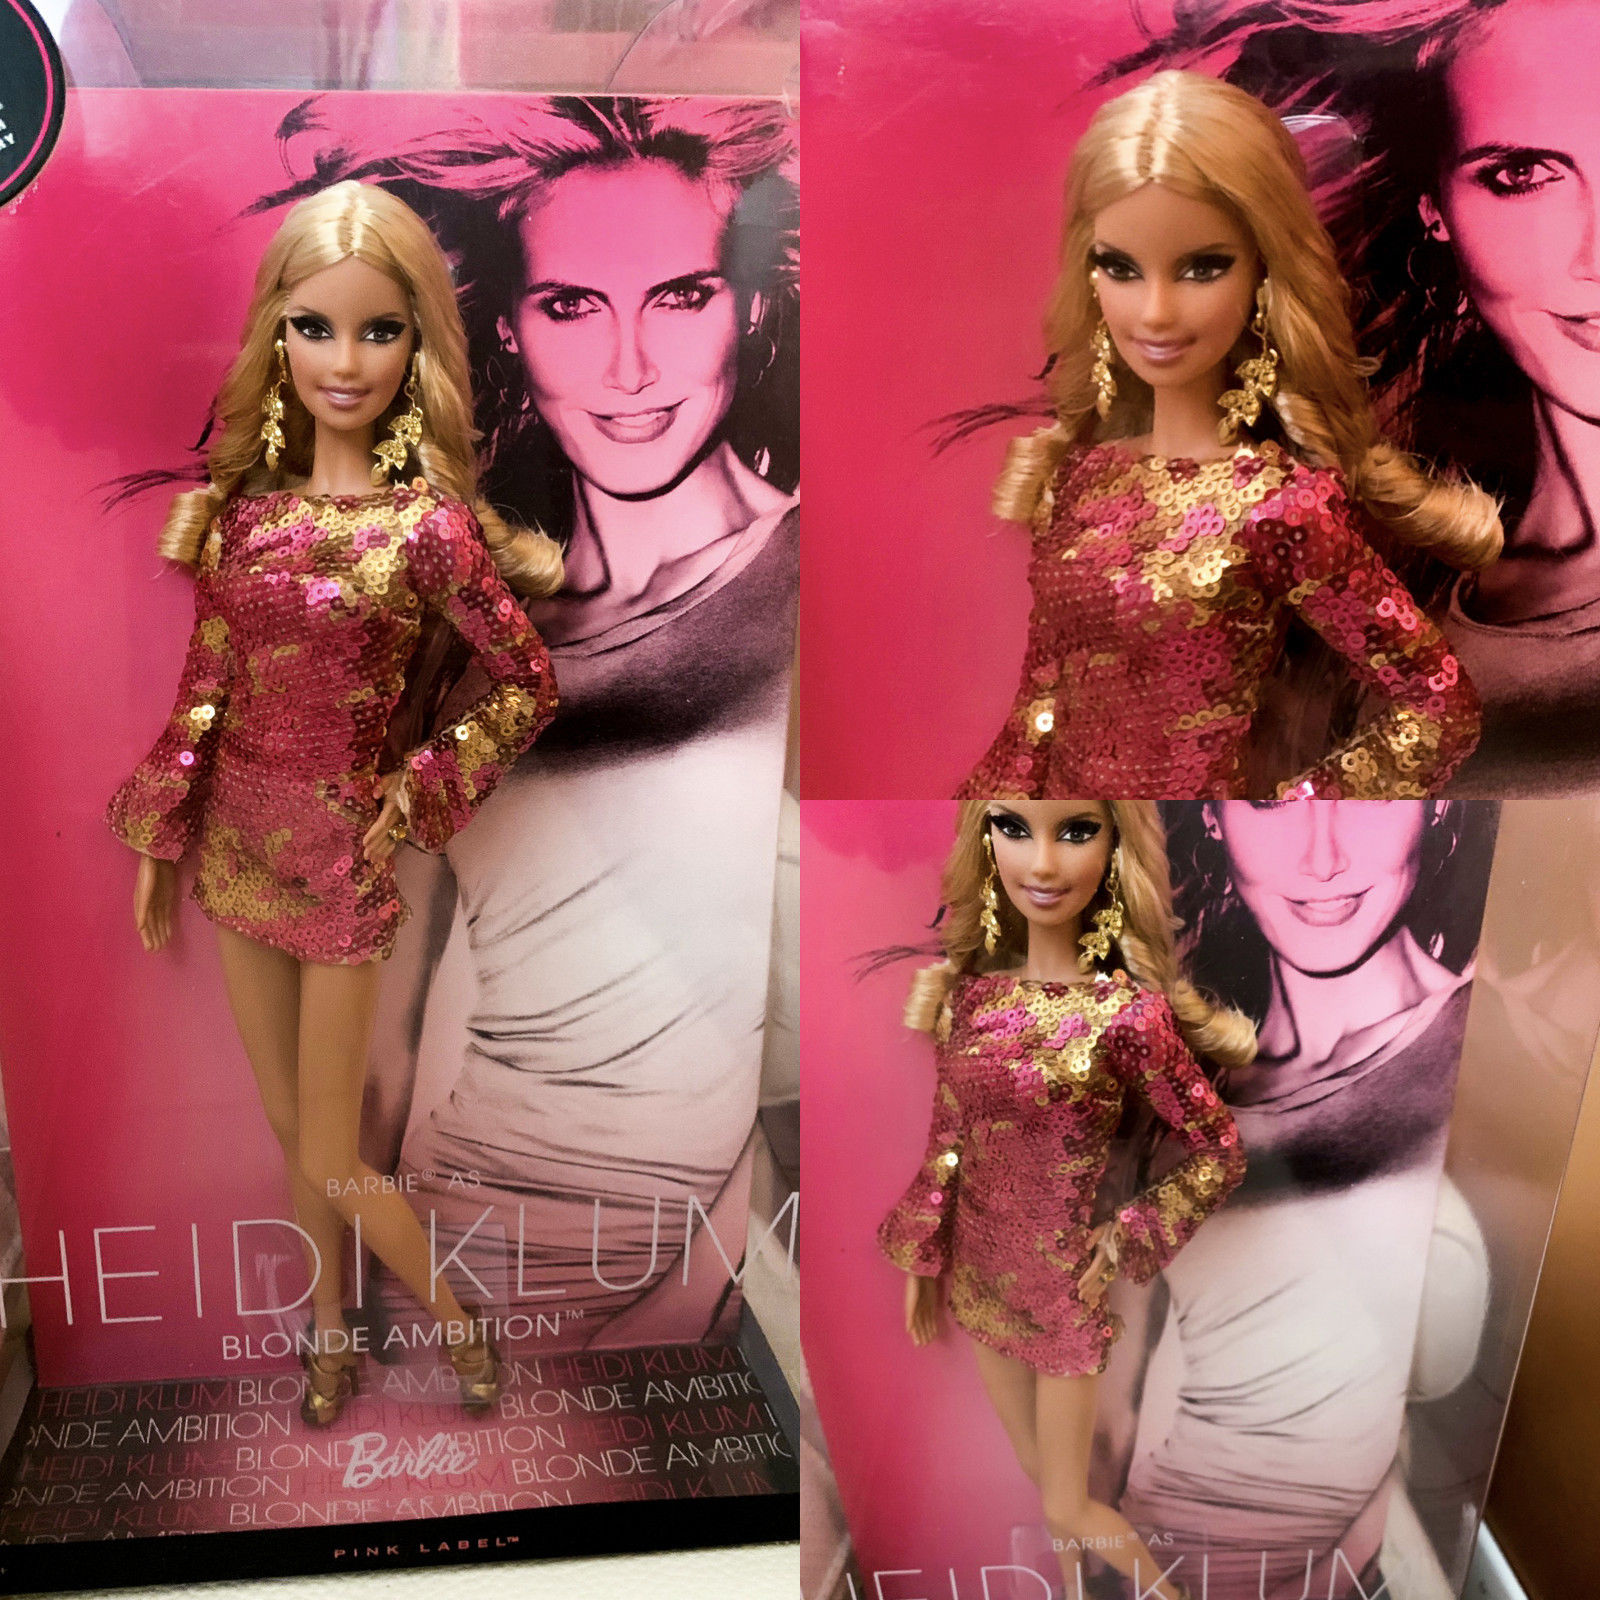 Heidi Klum Barbie 海蒂克鲁姆 名模 维密天使 珍藏版 芭比娃娃